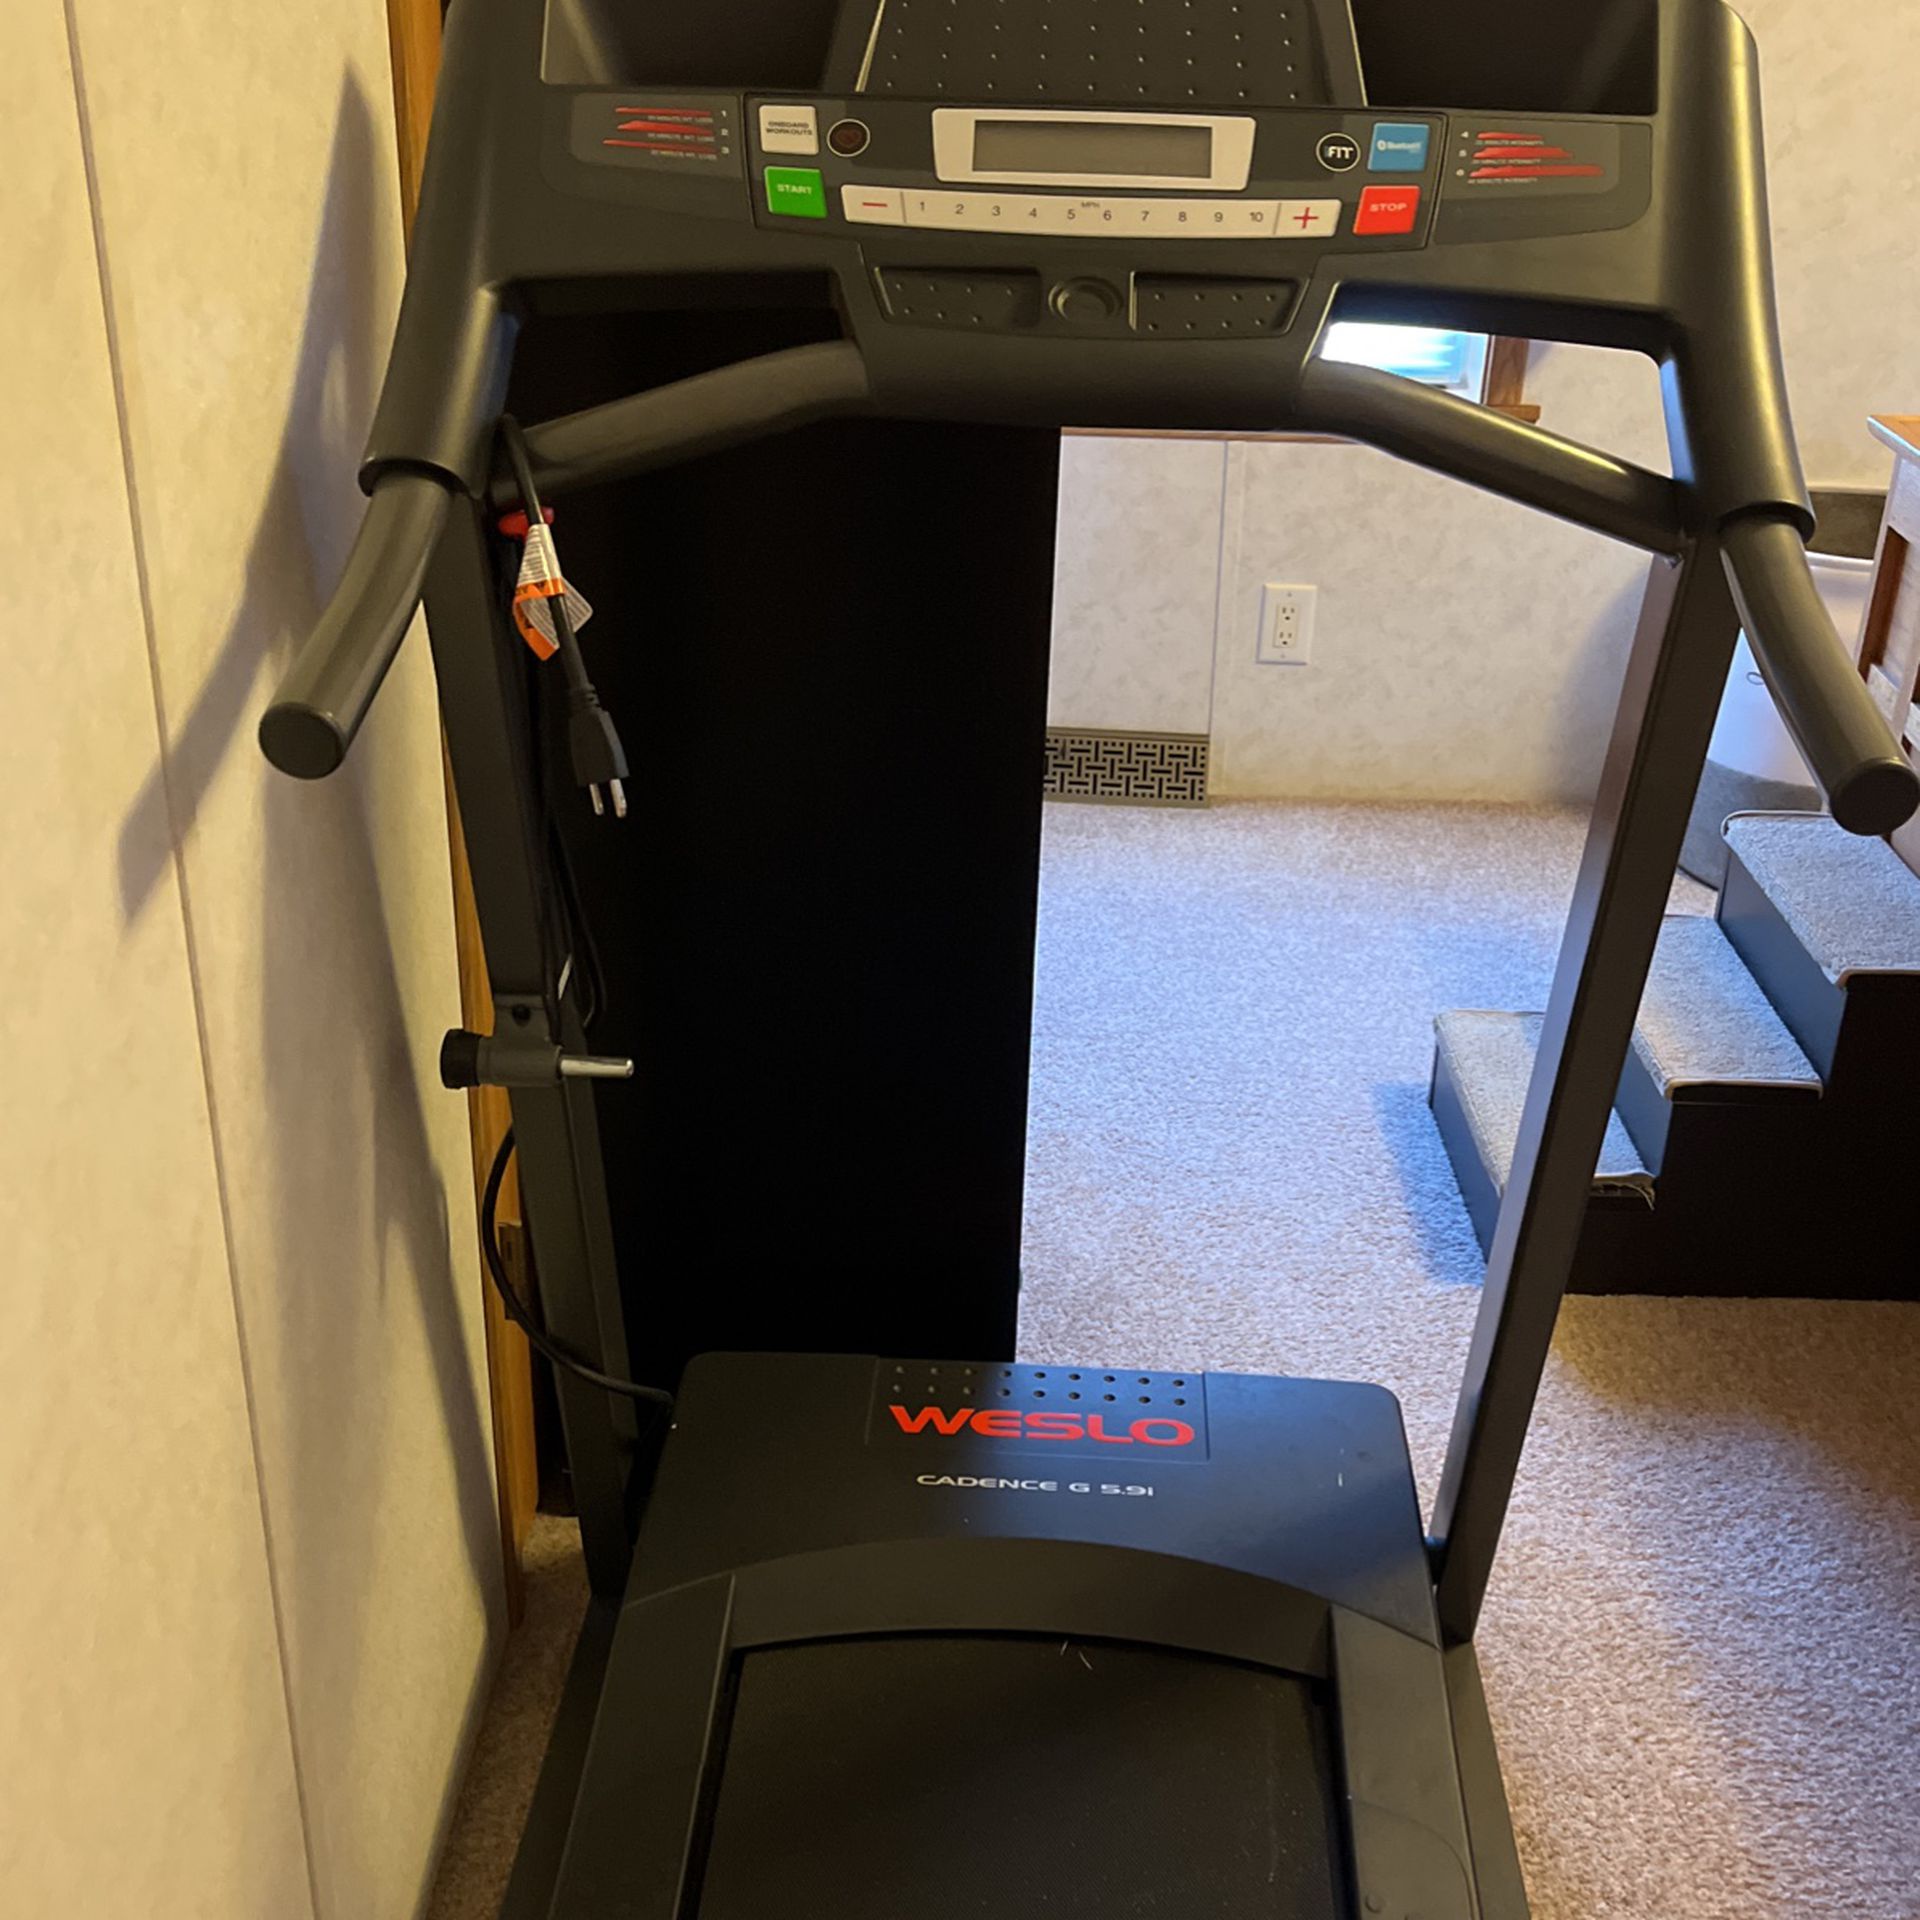 Wedlock Treadmill 